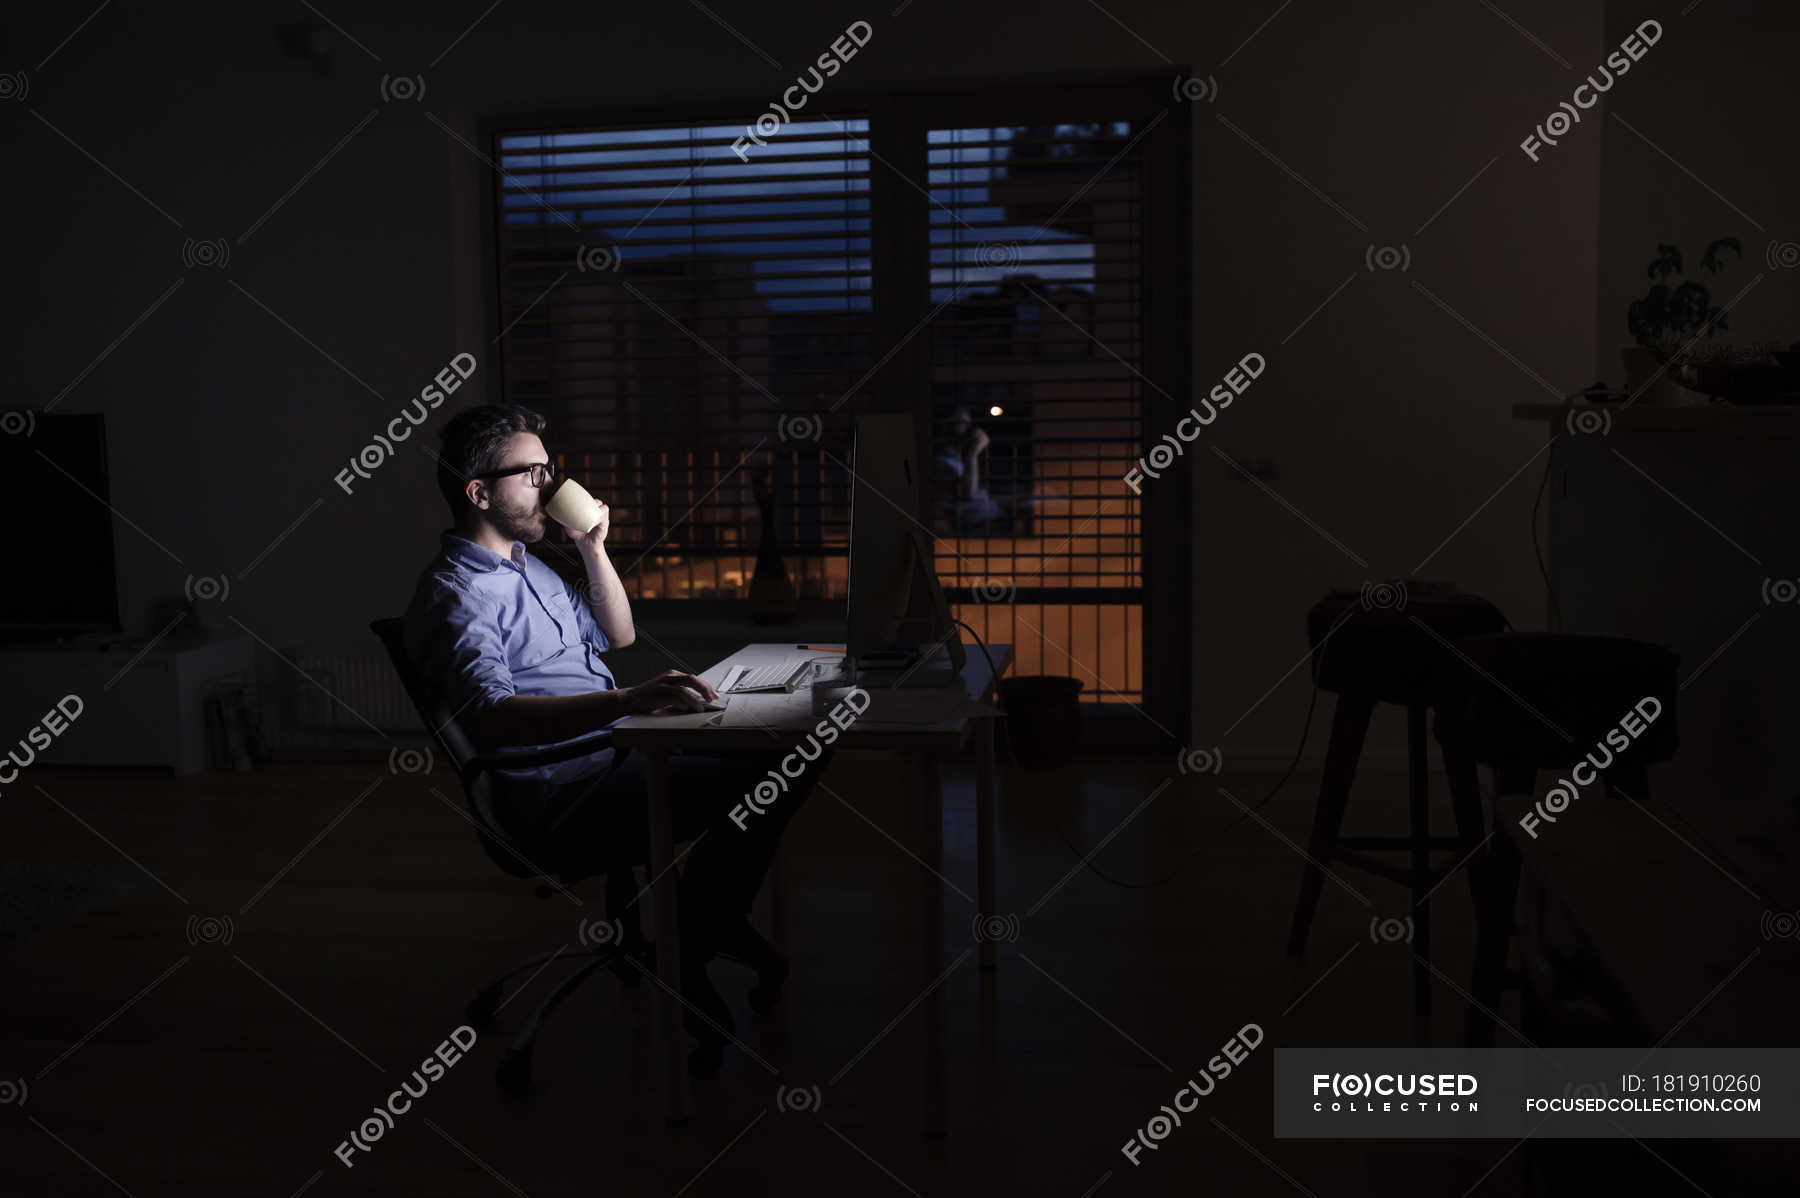 Night work s. Человек за компом ночью. Человек у компьютера ночью. Девушка за компьютером ночью. Работа за компьютером ночью.